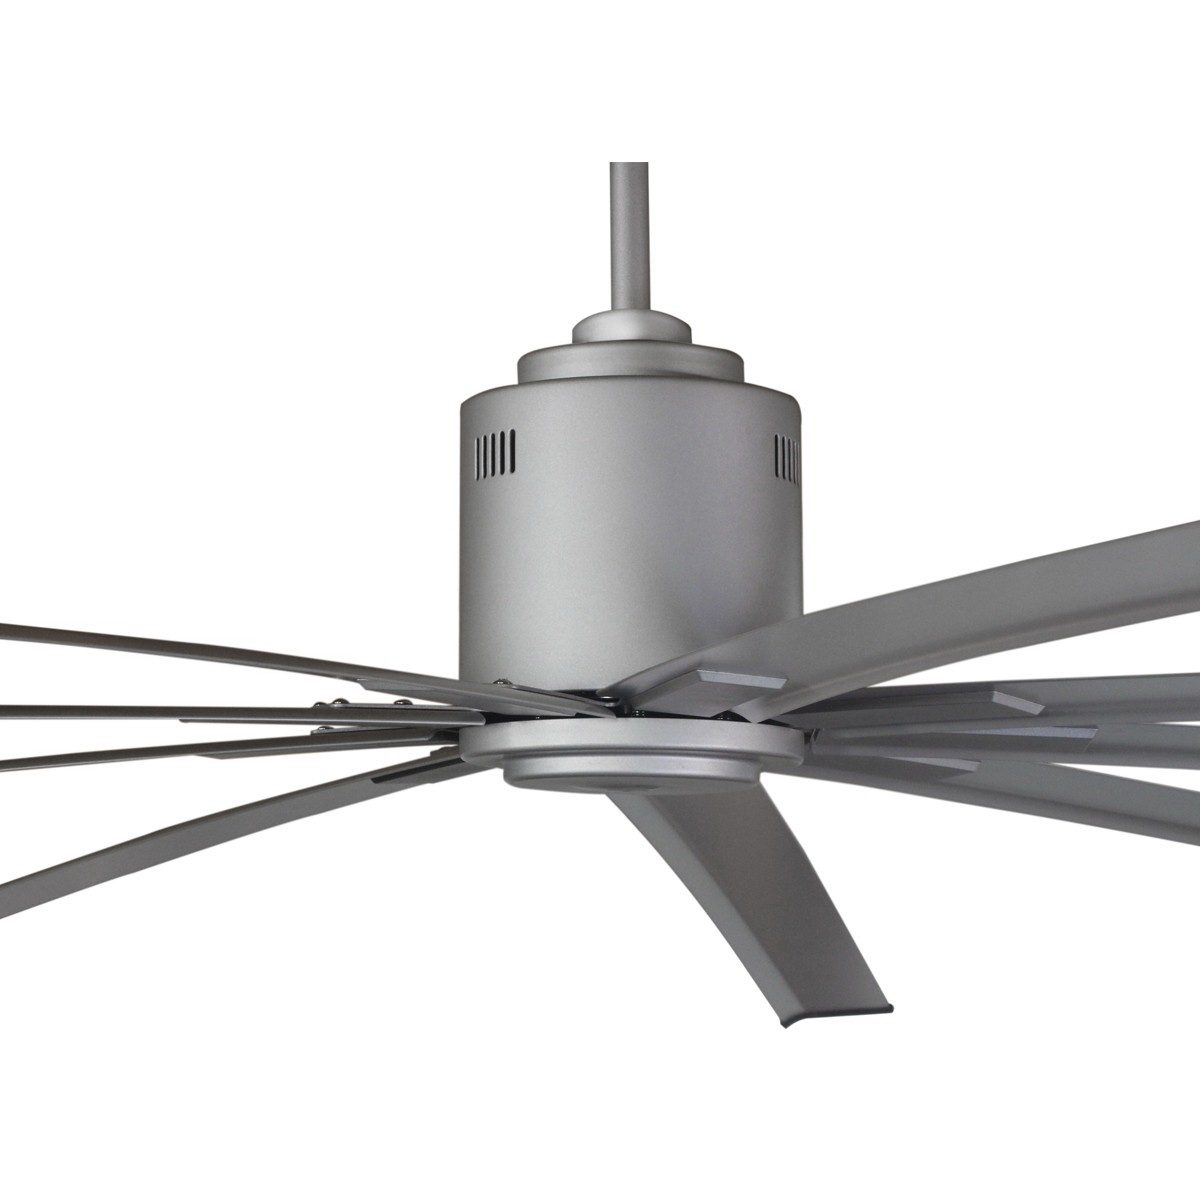 Big Air ICF72 Ceiling Fan, 110 V, 6-Speed, 10200 cfm Air - 2